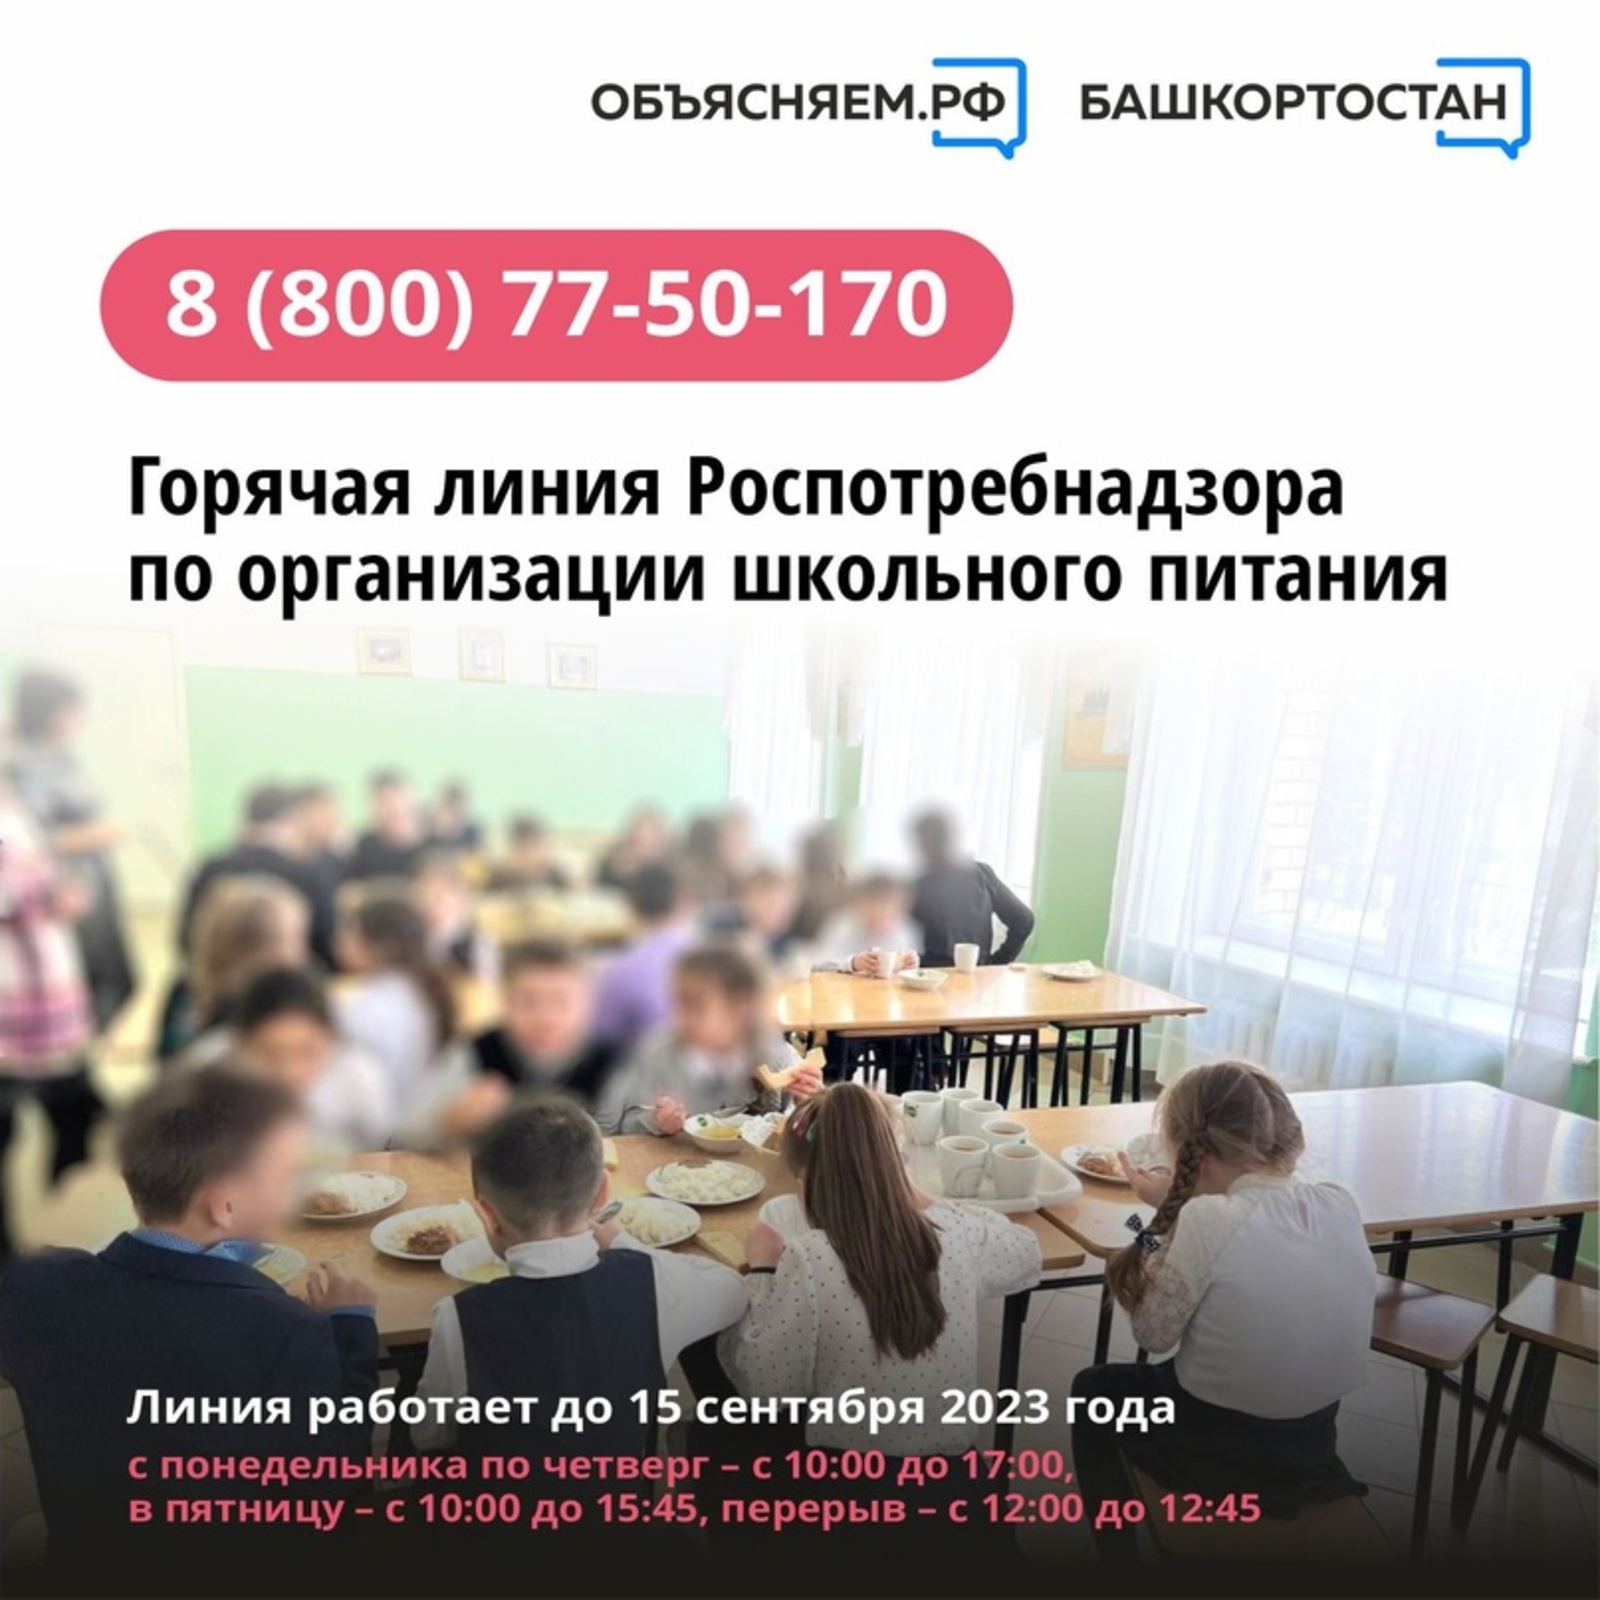 Задать вопрос по организации школьного питания в Башкортостане можно по телефону горячей линии Управления Роспотребнадзора: